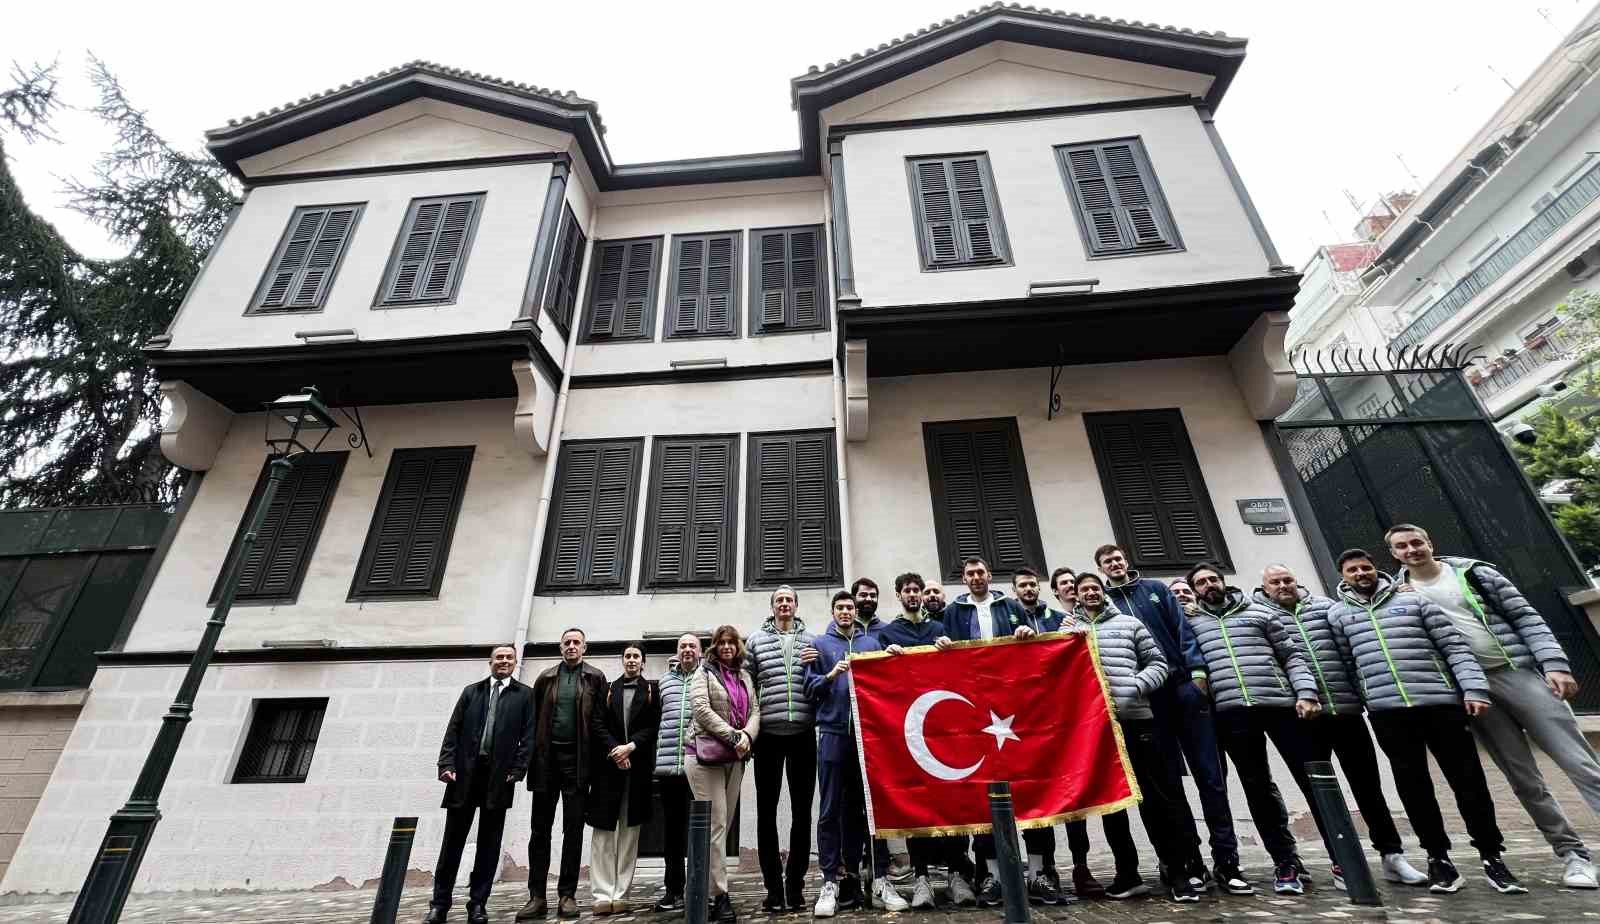 Tofaş Basketbol Takımı, Atatürkün Evini Ziyaret Etti